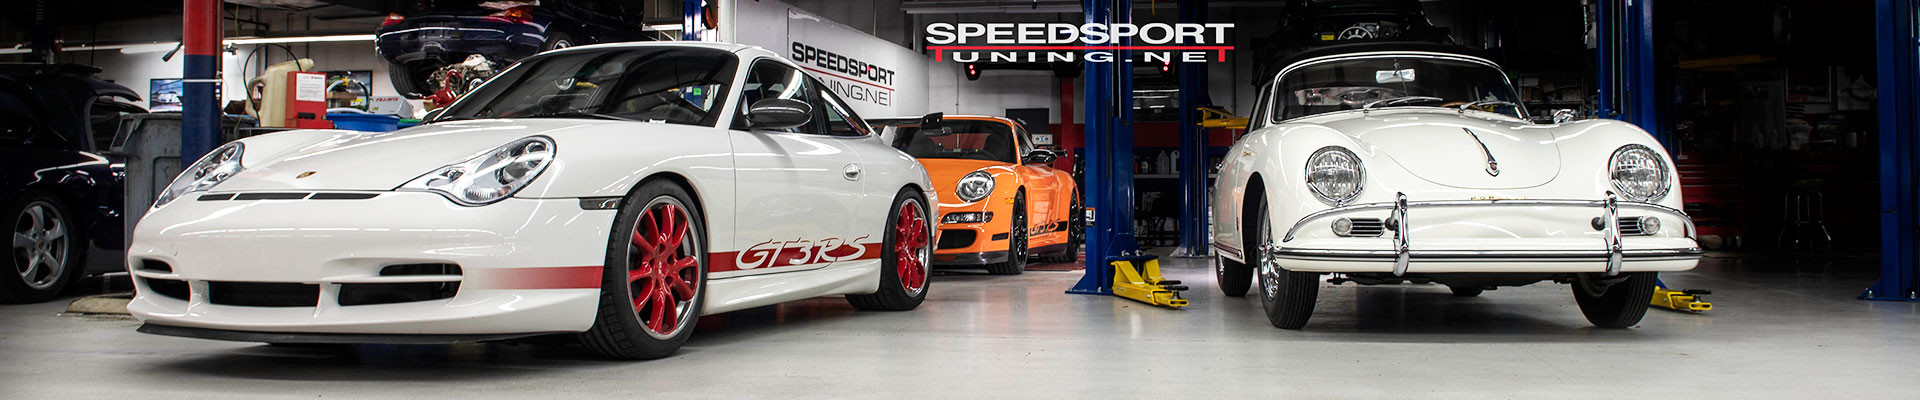 Porsche Repair shop Speedsport Tuning a leading Porsche repair shop in Connecticut specializing in Porsche repair, maintenance, performance tuning and service